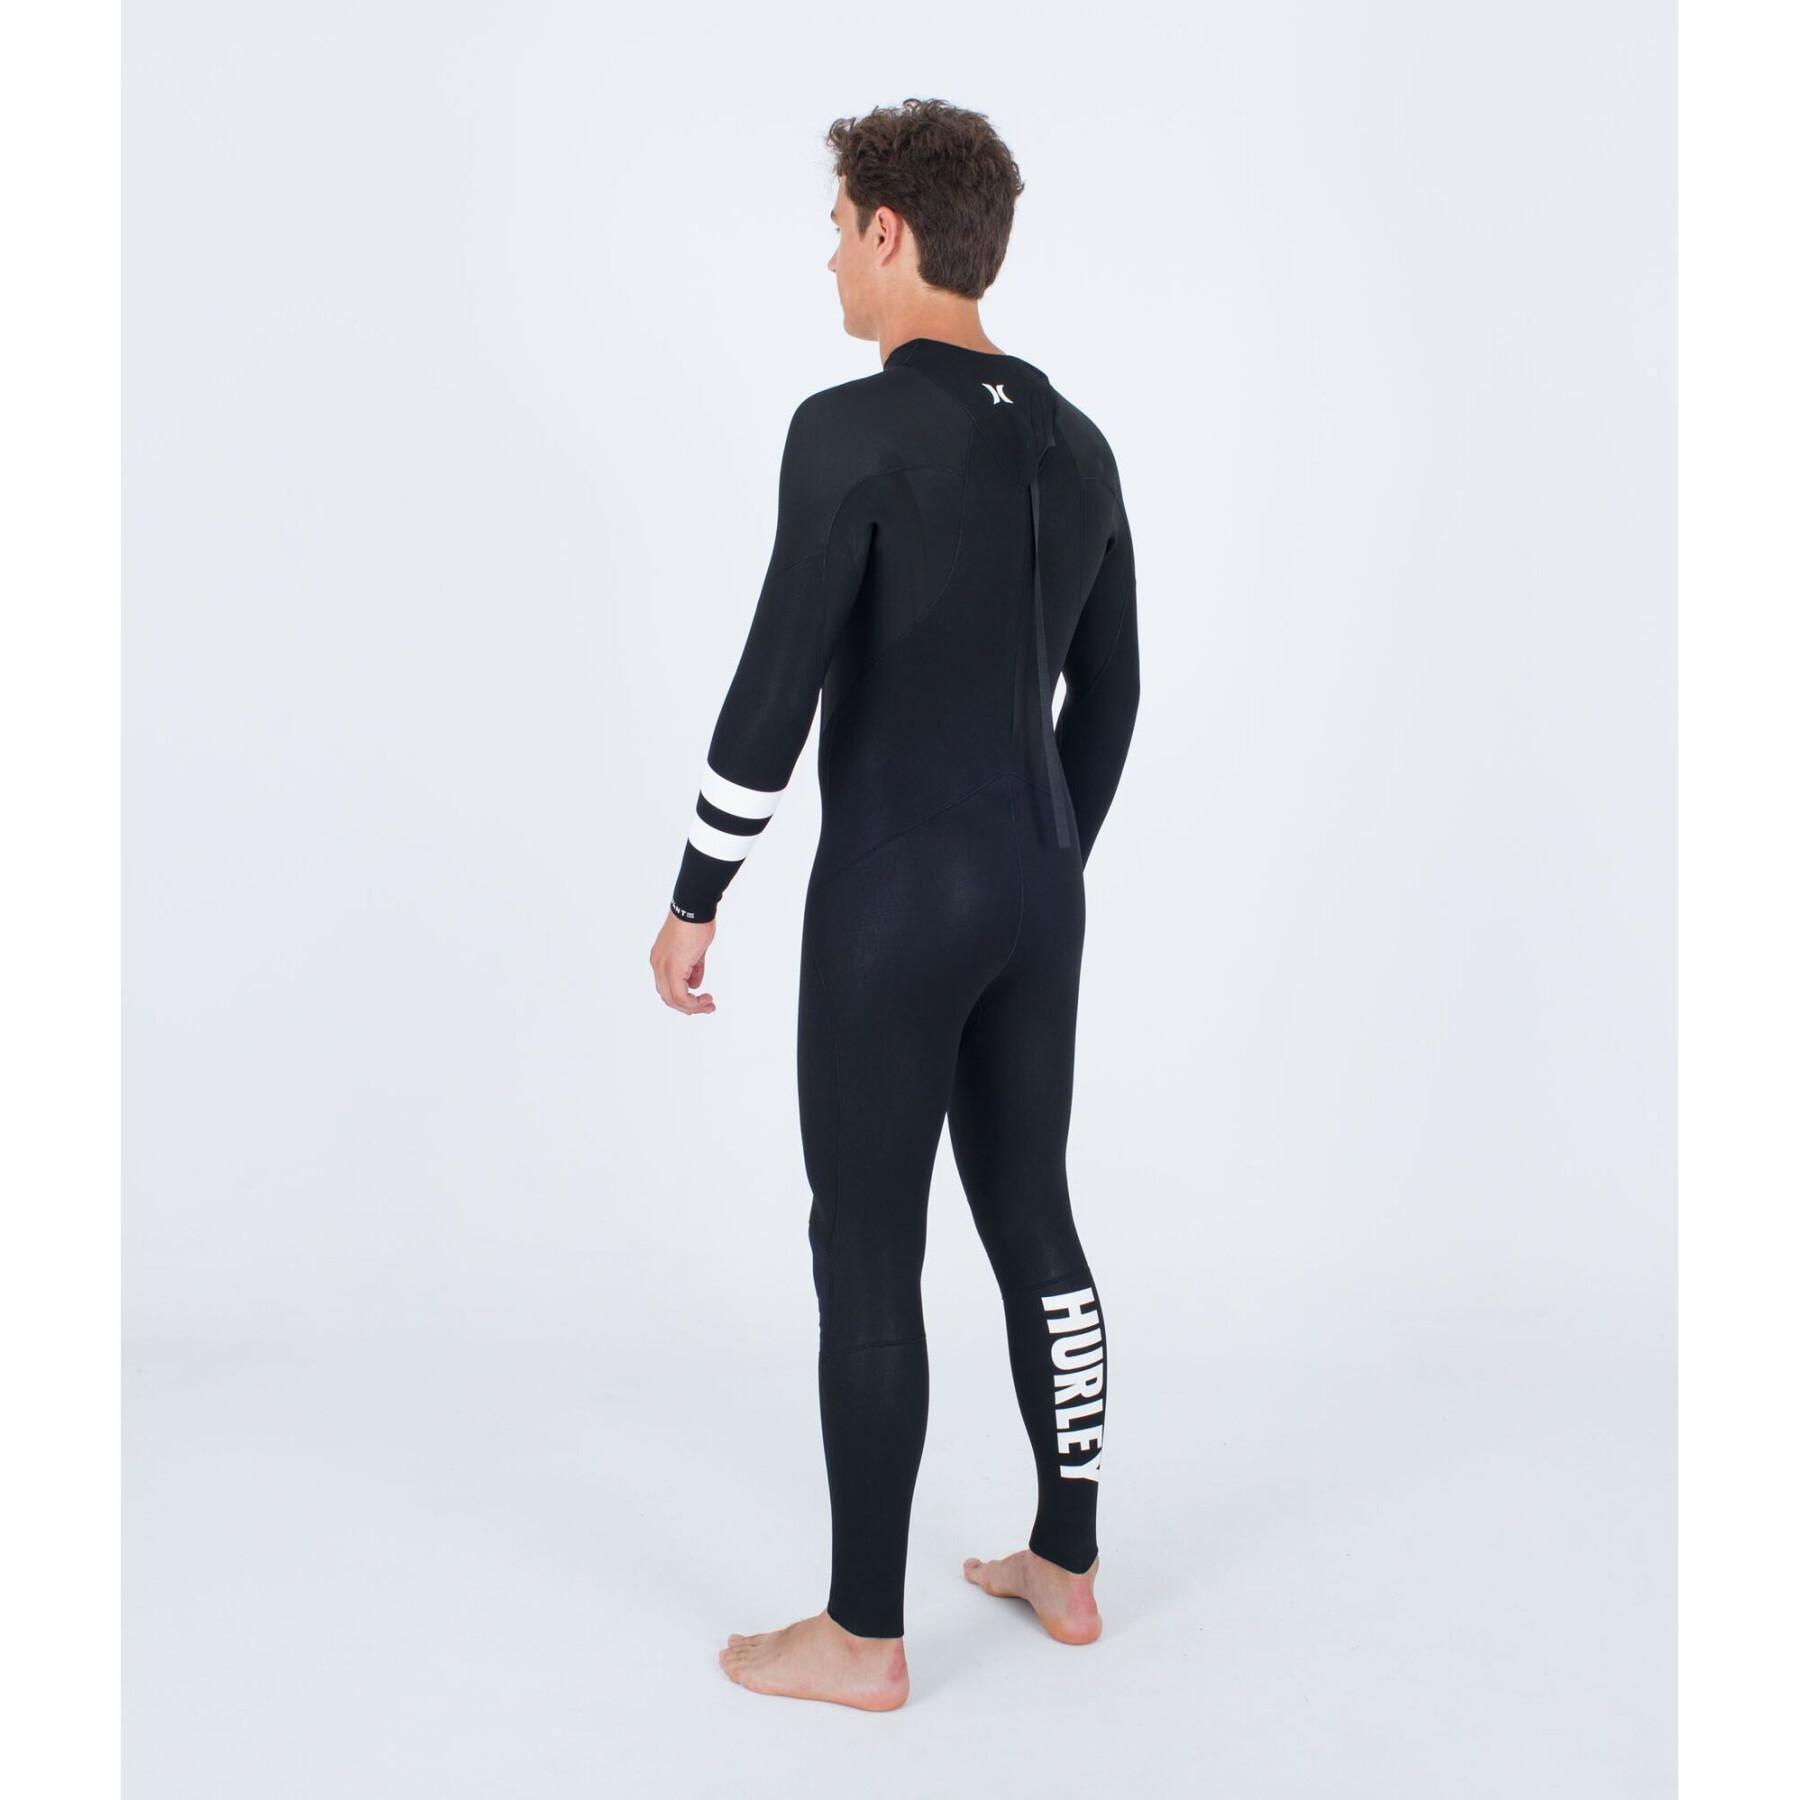 Surf suit Hurley Advant 3/2 mm